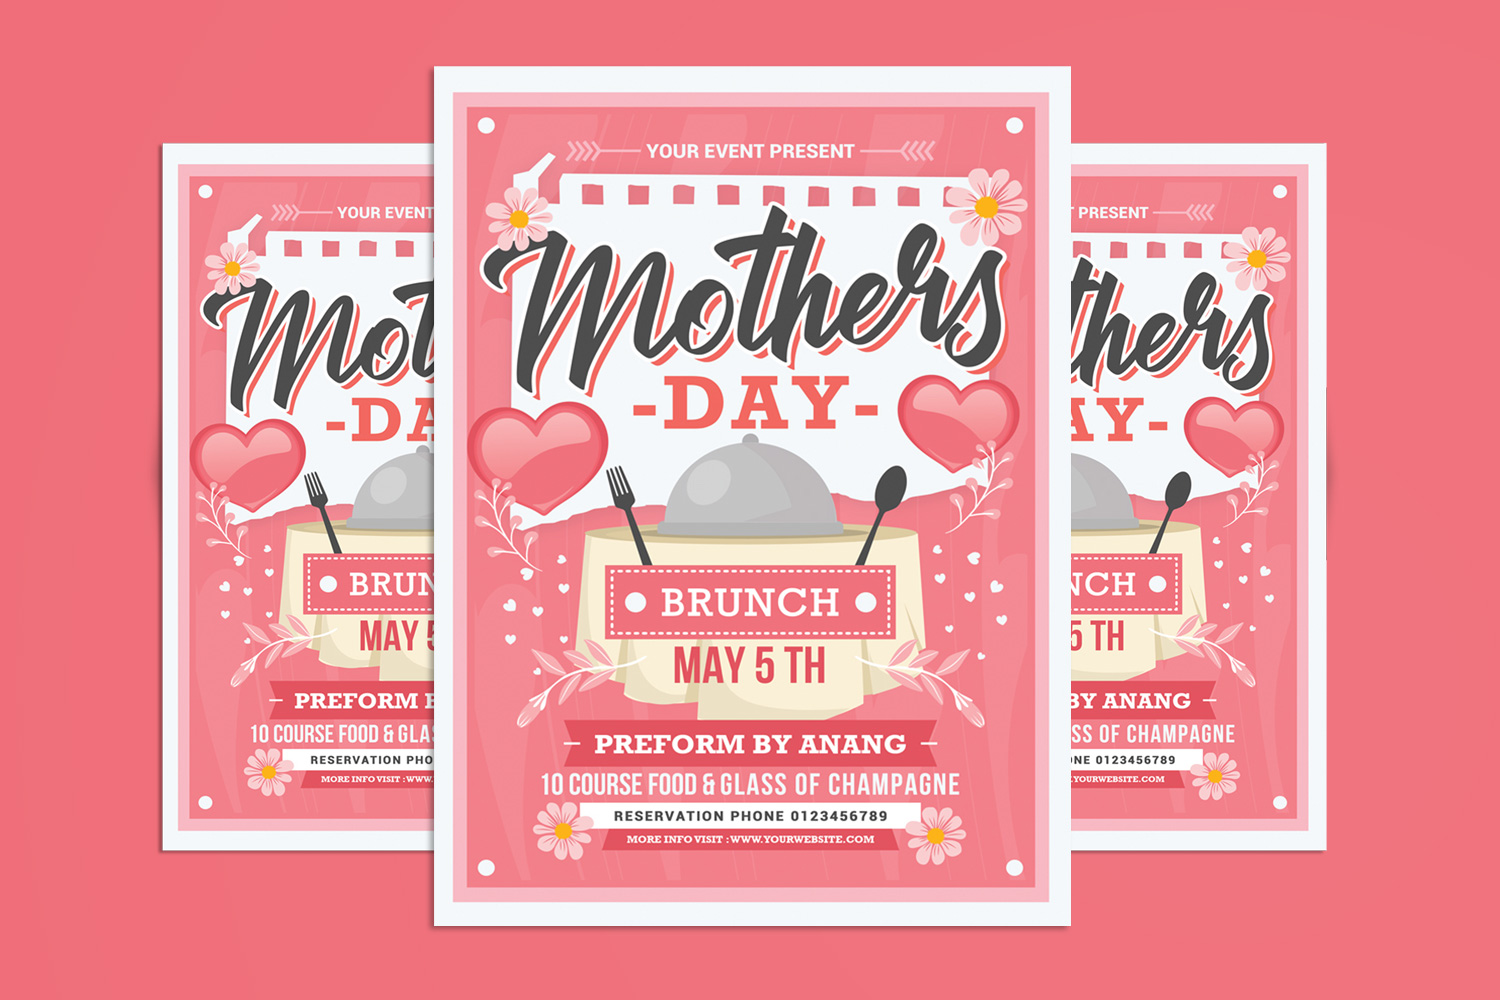 Mother's Day Brunch Flyer